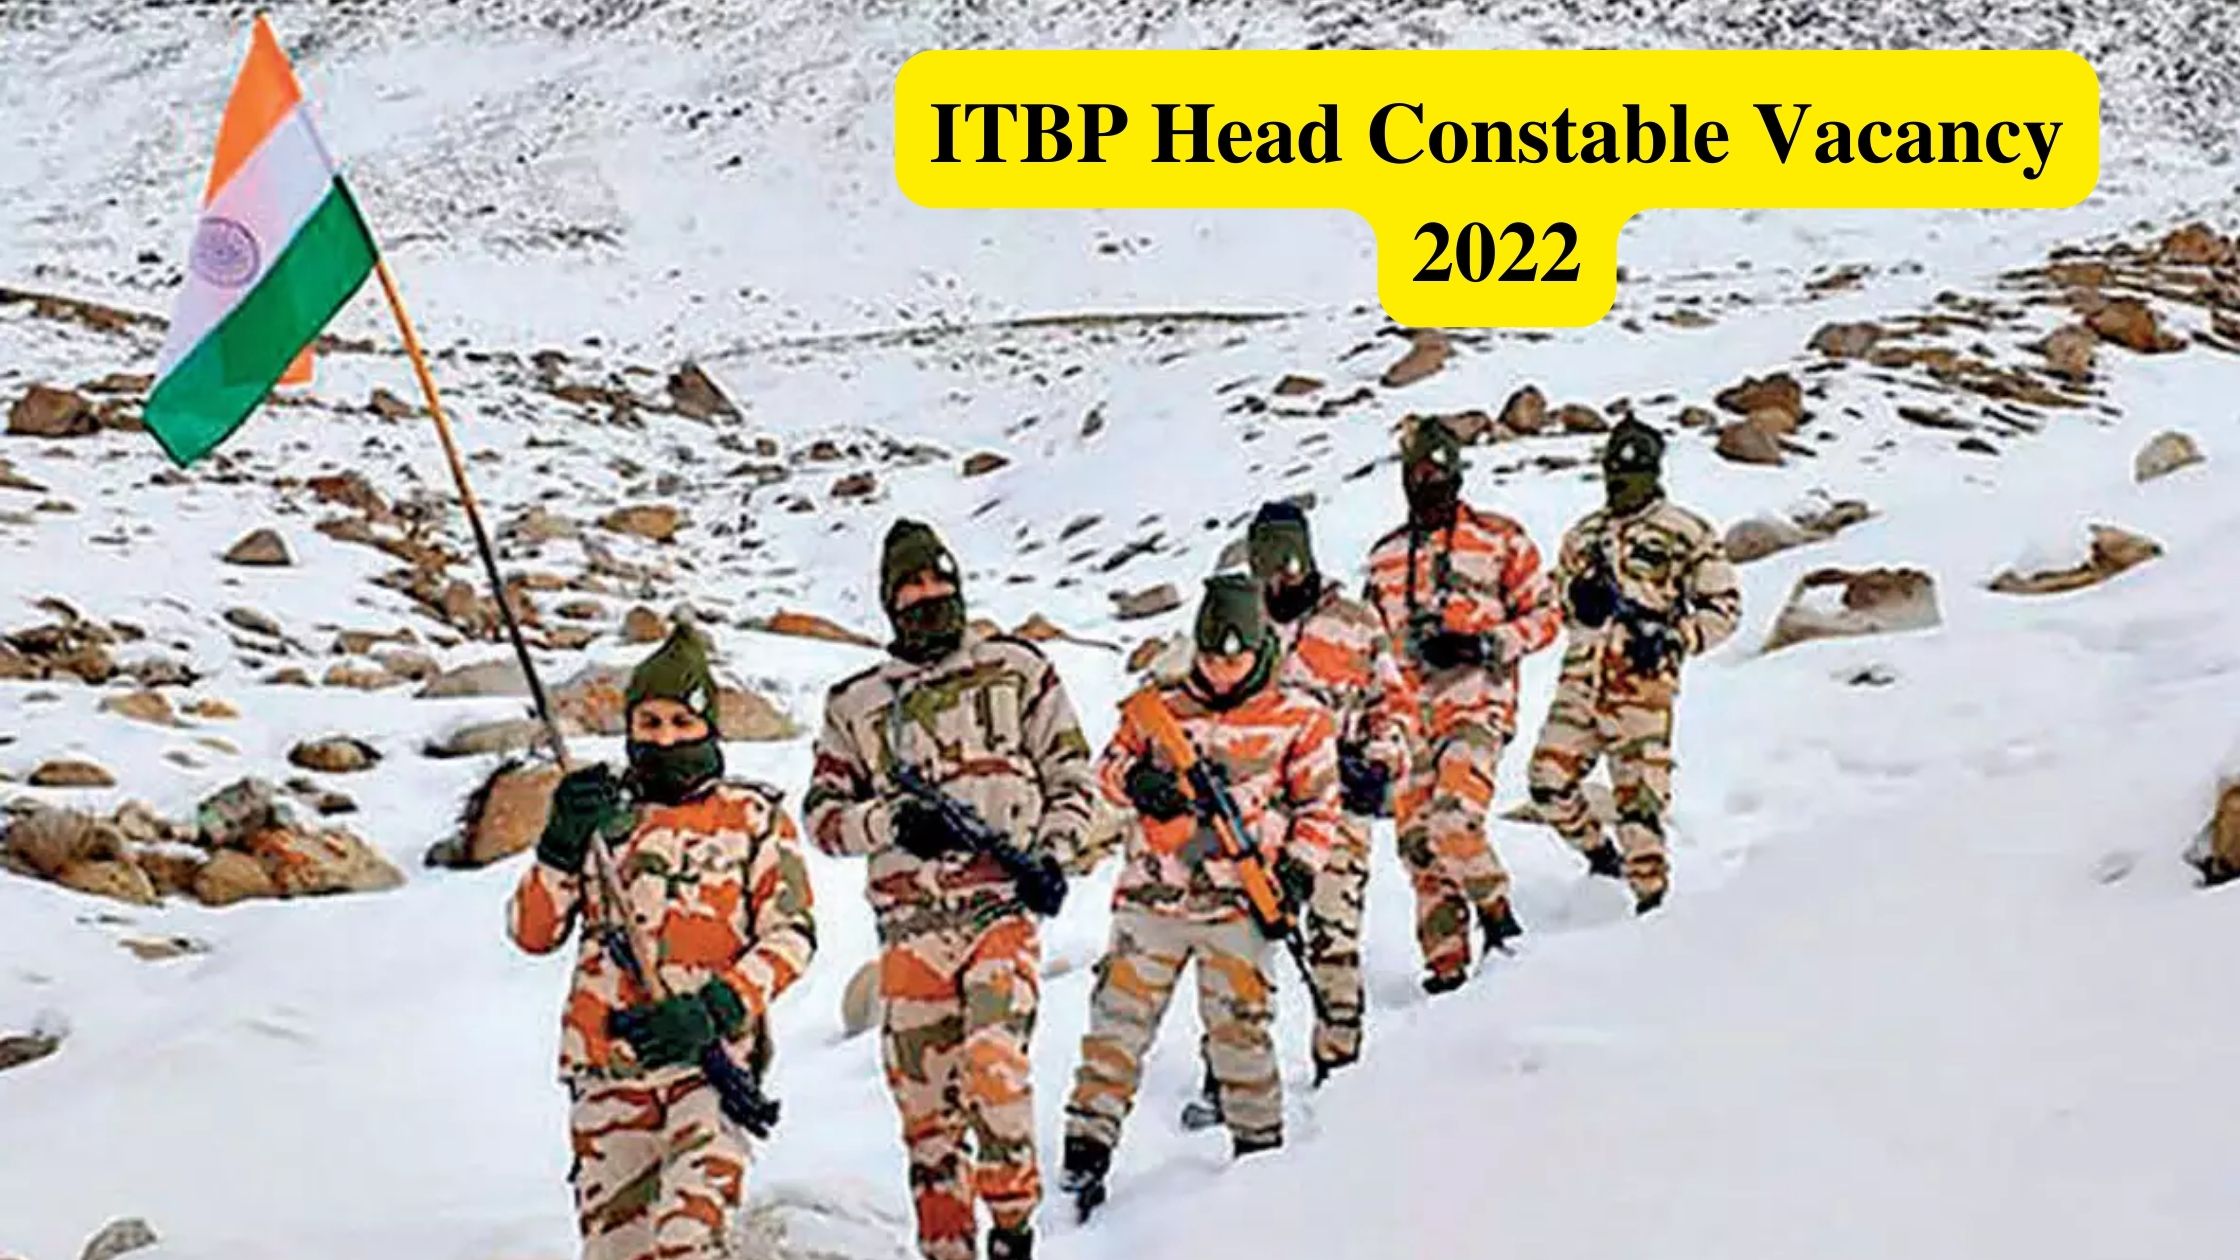 ITBP Head Constable Vacancy 2022